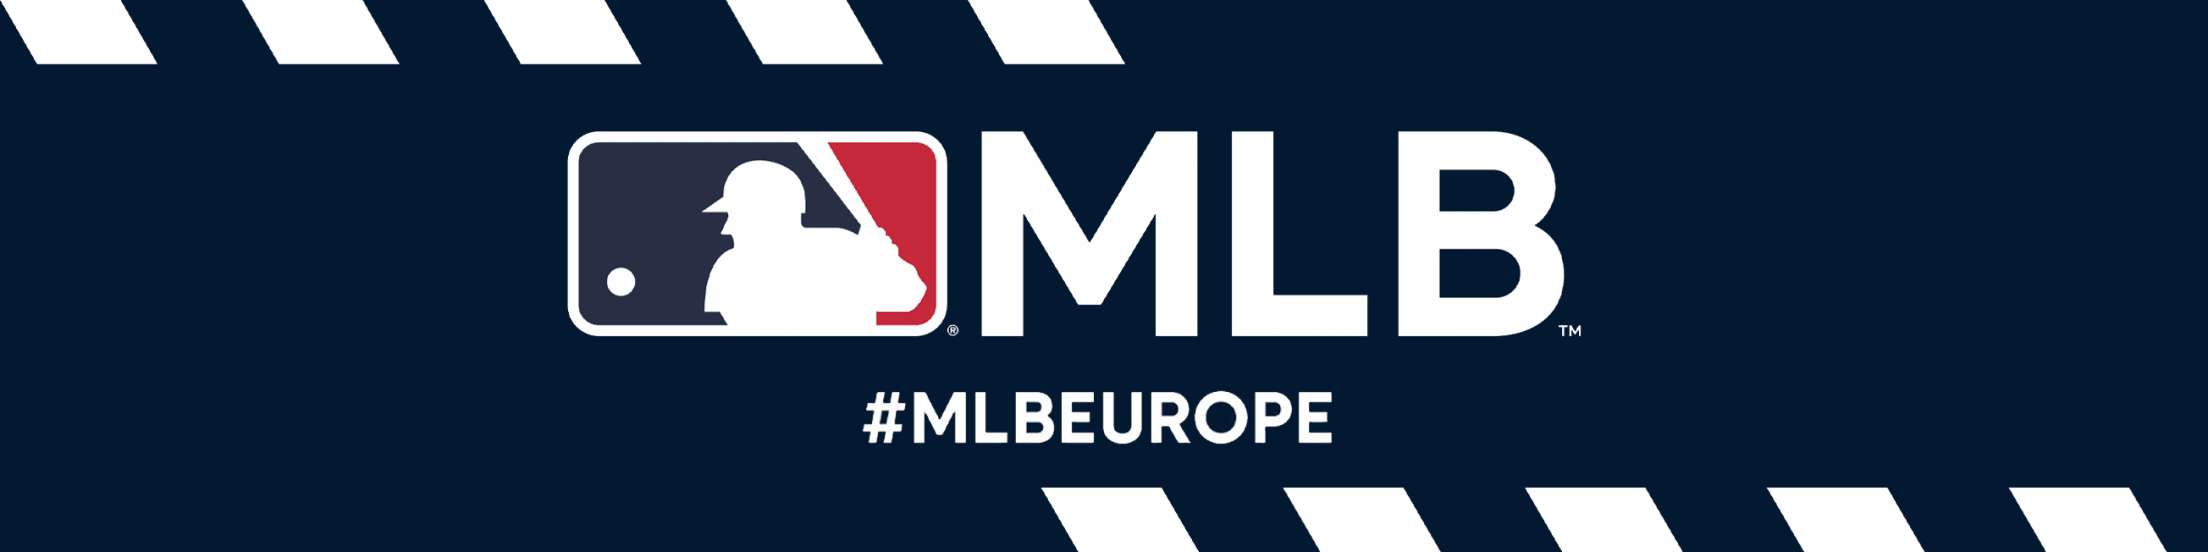 MLB Europe Newsletter Registration, MLB International